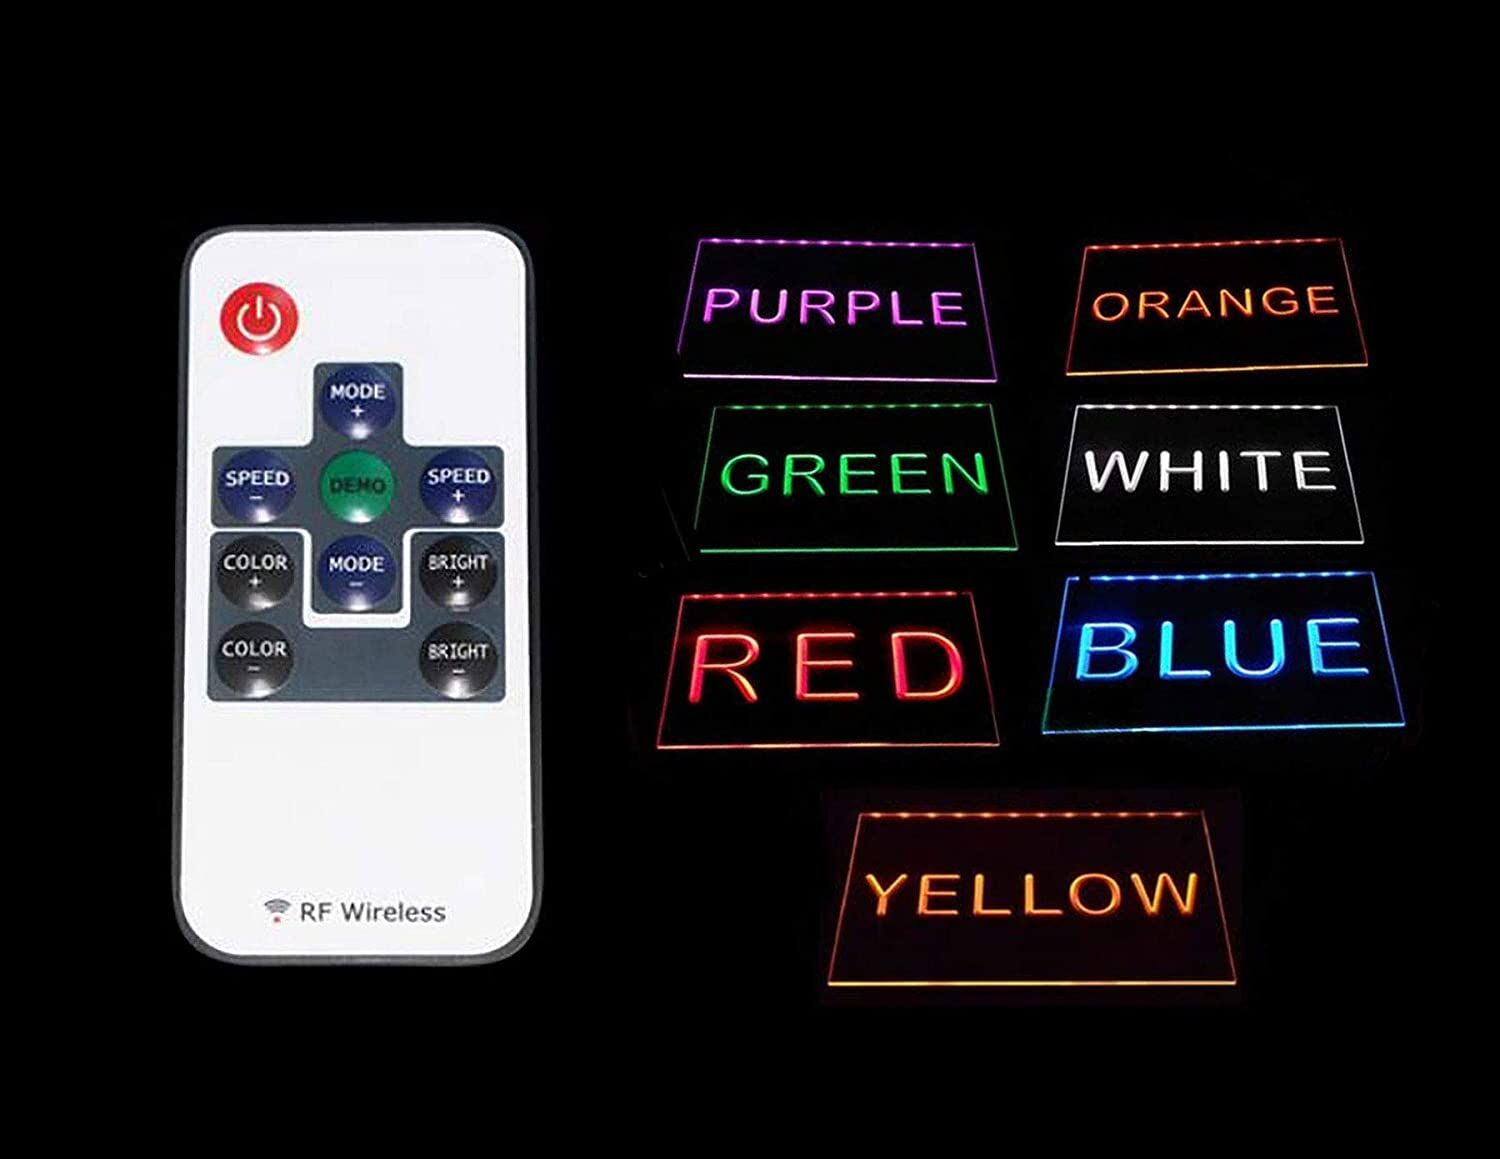 Stevie Wonder Wordmark LED Neon Sign